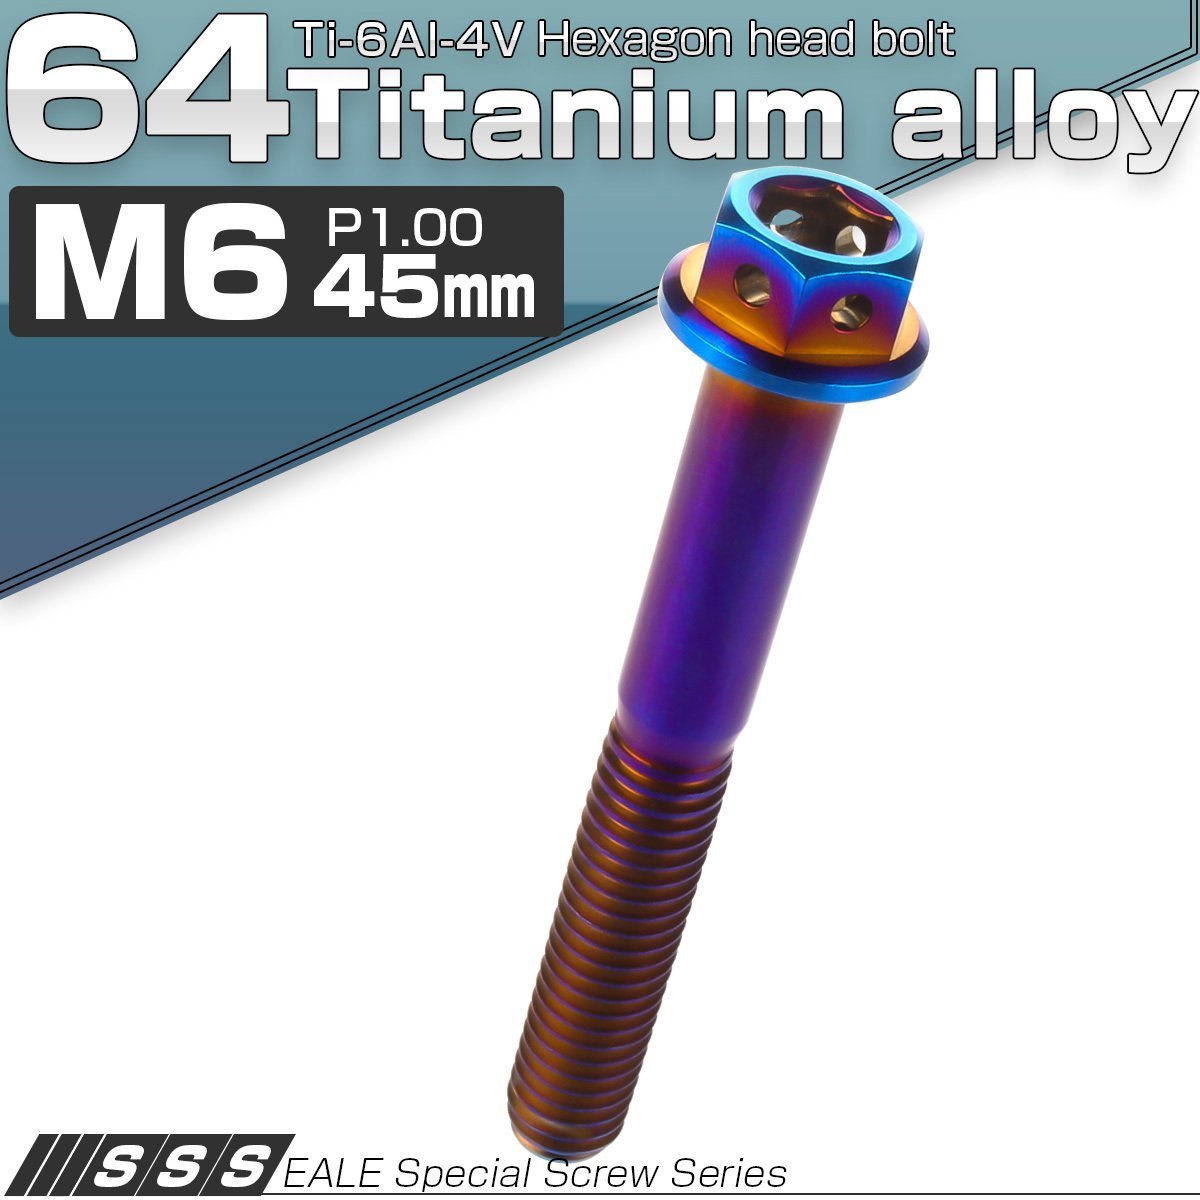 64チタン M6×45mm P1.00 デザイン六角ボルト 六角穴付きボルト フランジ付き 焼きチタン風 Ti6Al-4V JA738_画像1